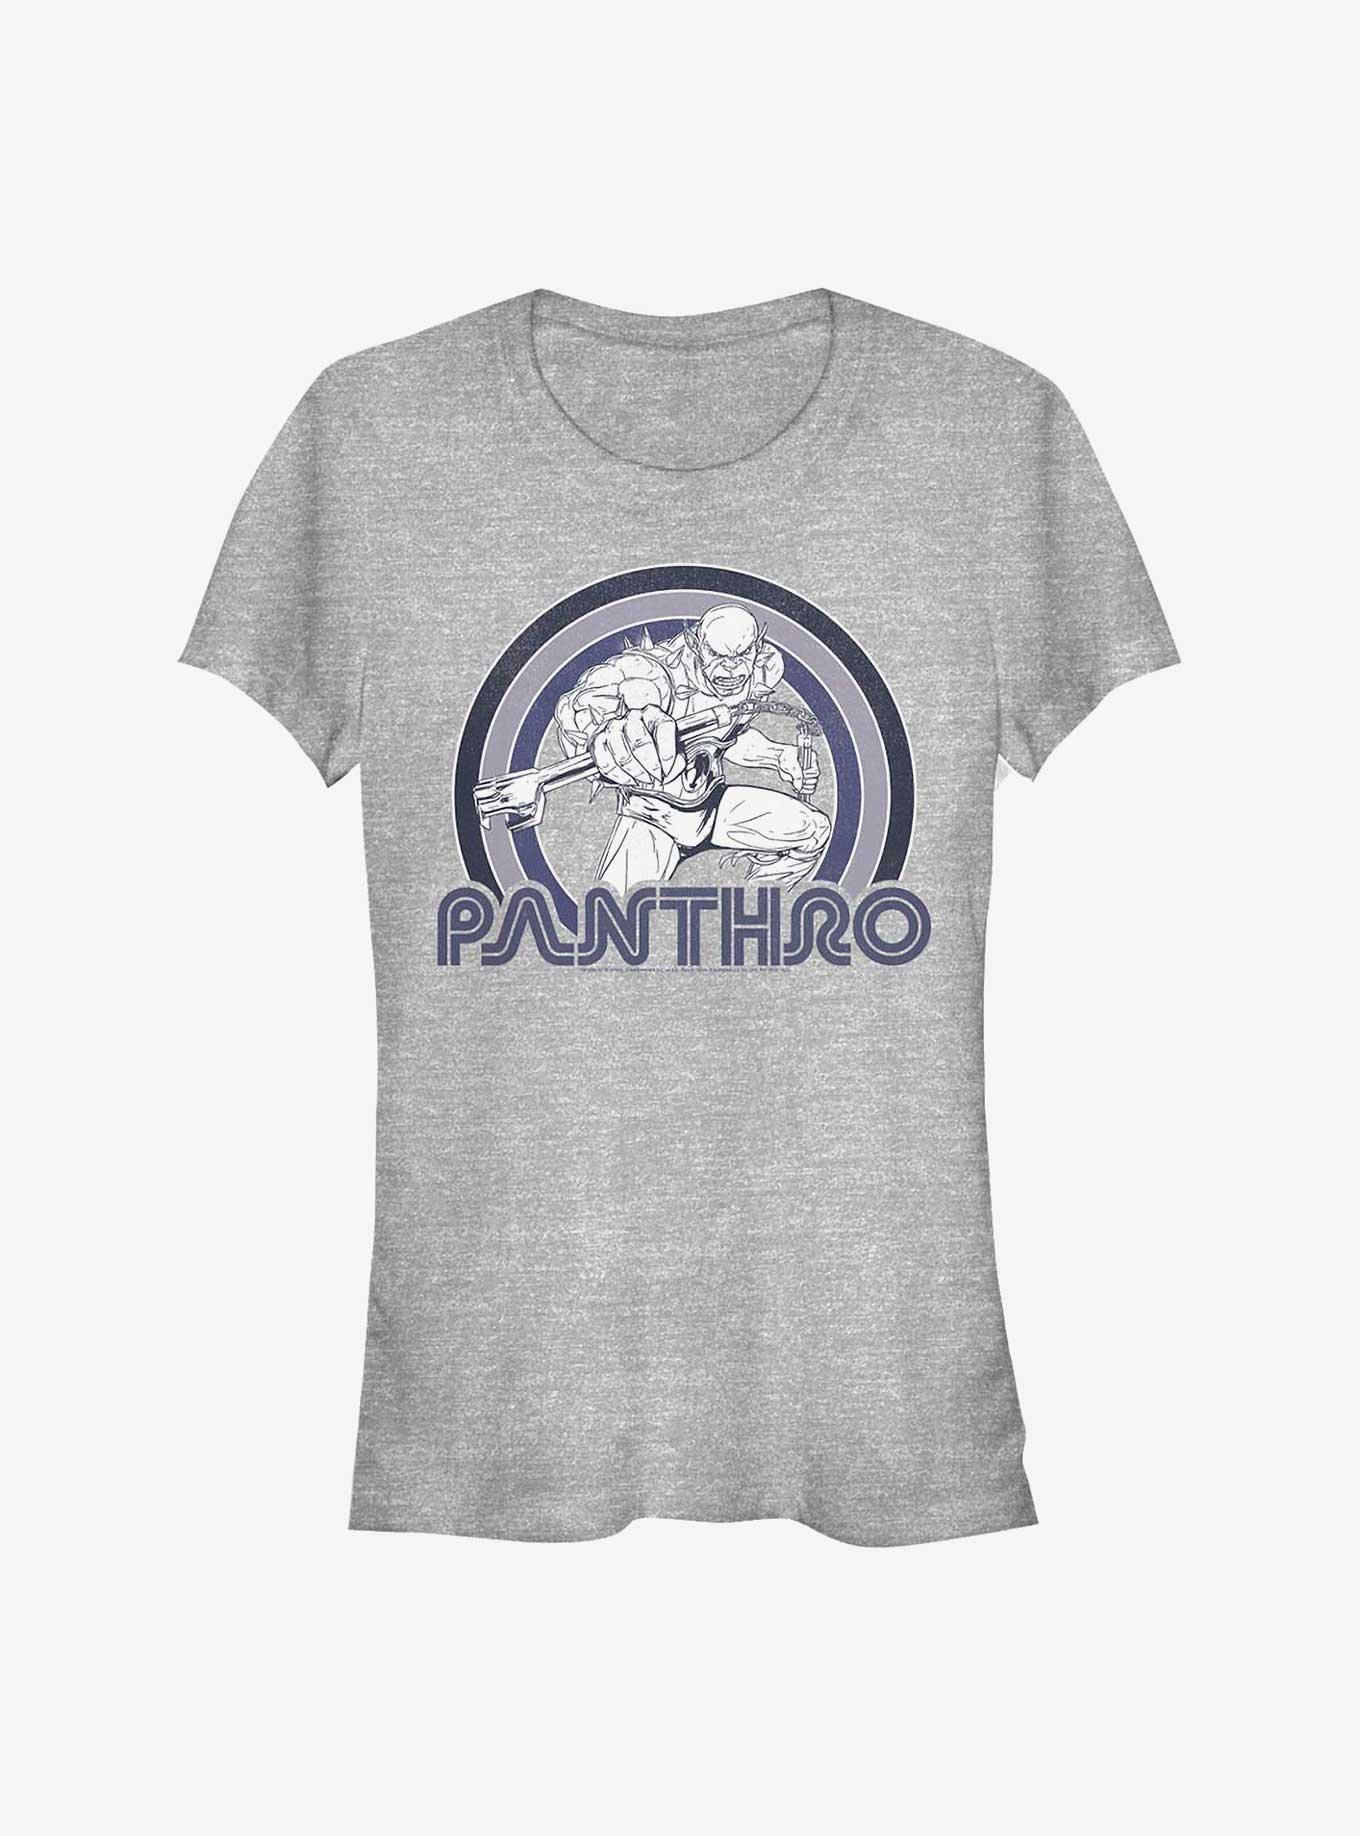 Thundercats Pantharo Girls T-Shirt